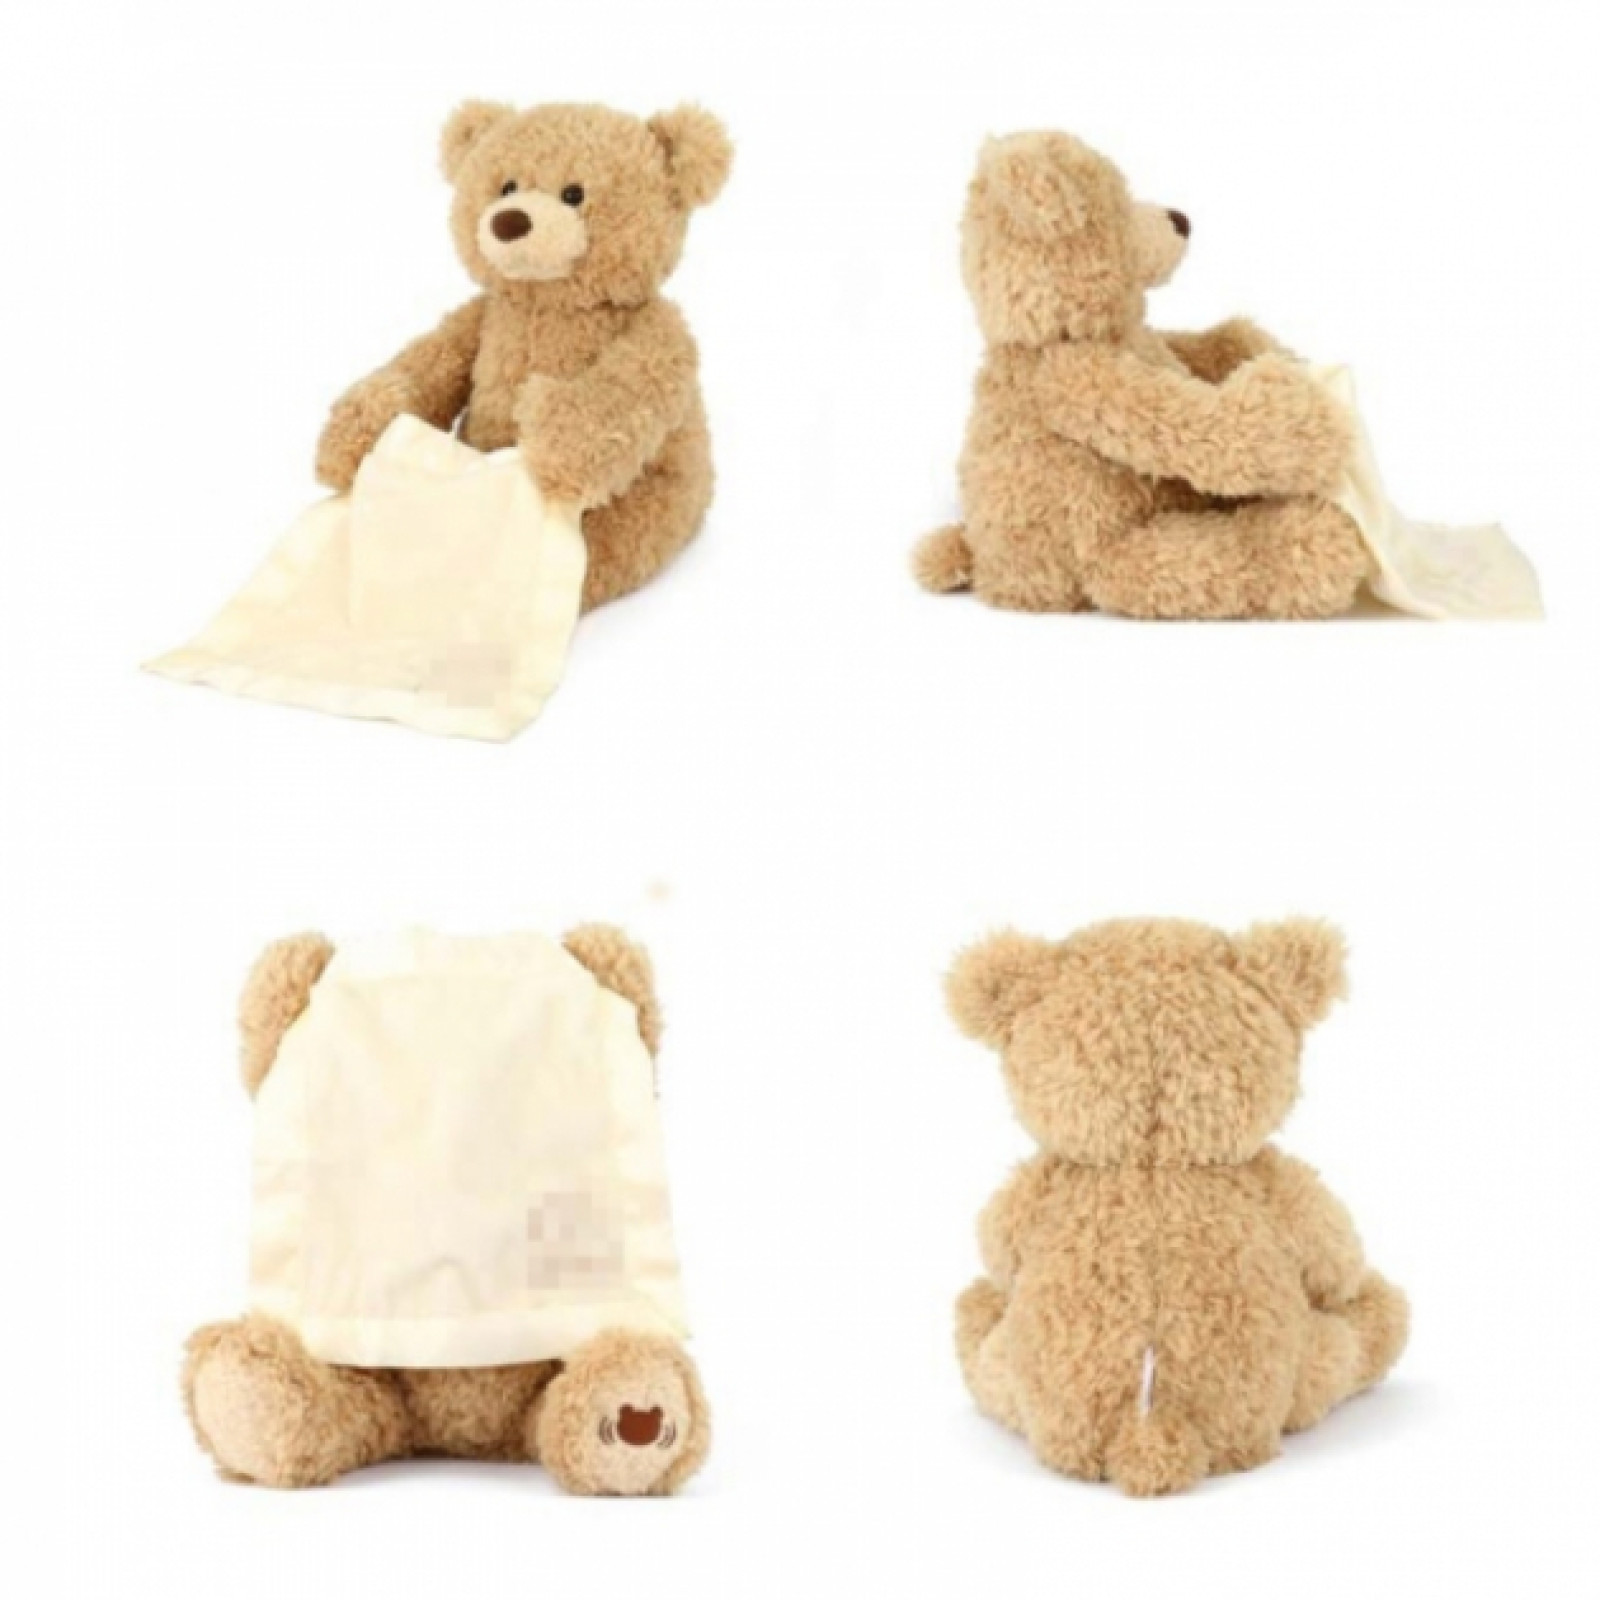 Плюшевый Мишка Peekaboo Bear 30 см, говорящий, интерактивная мягкая игрушка Пикабу 183787